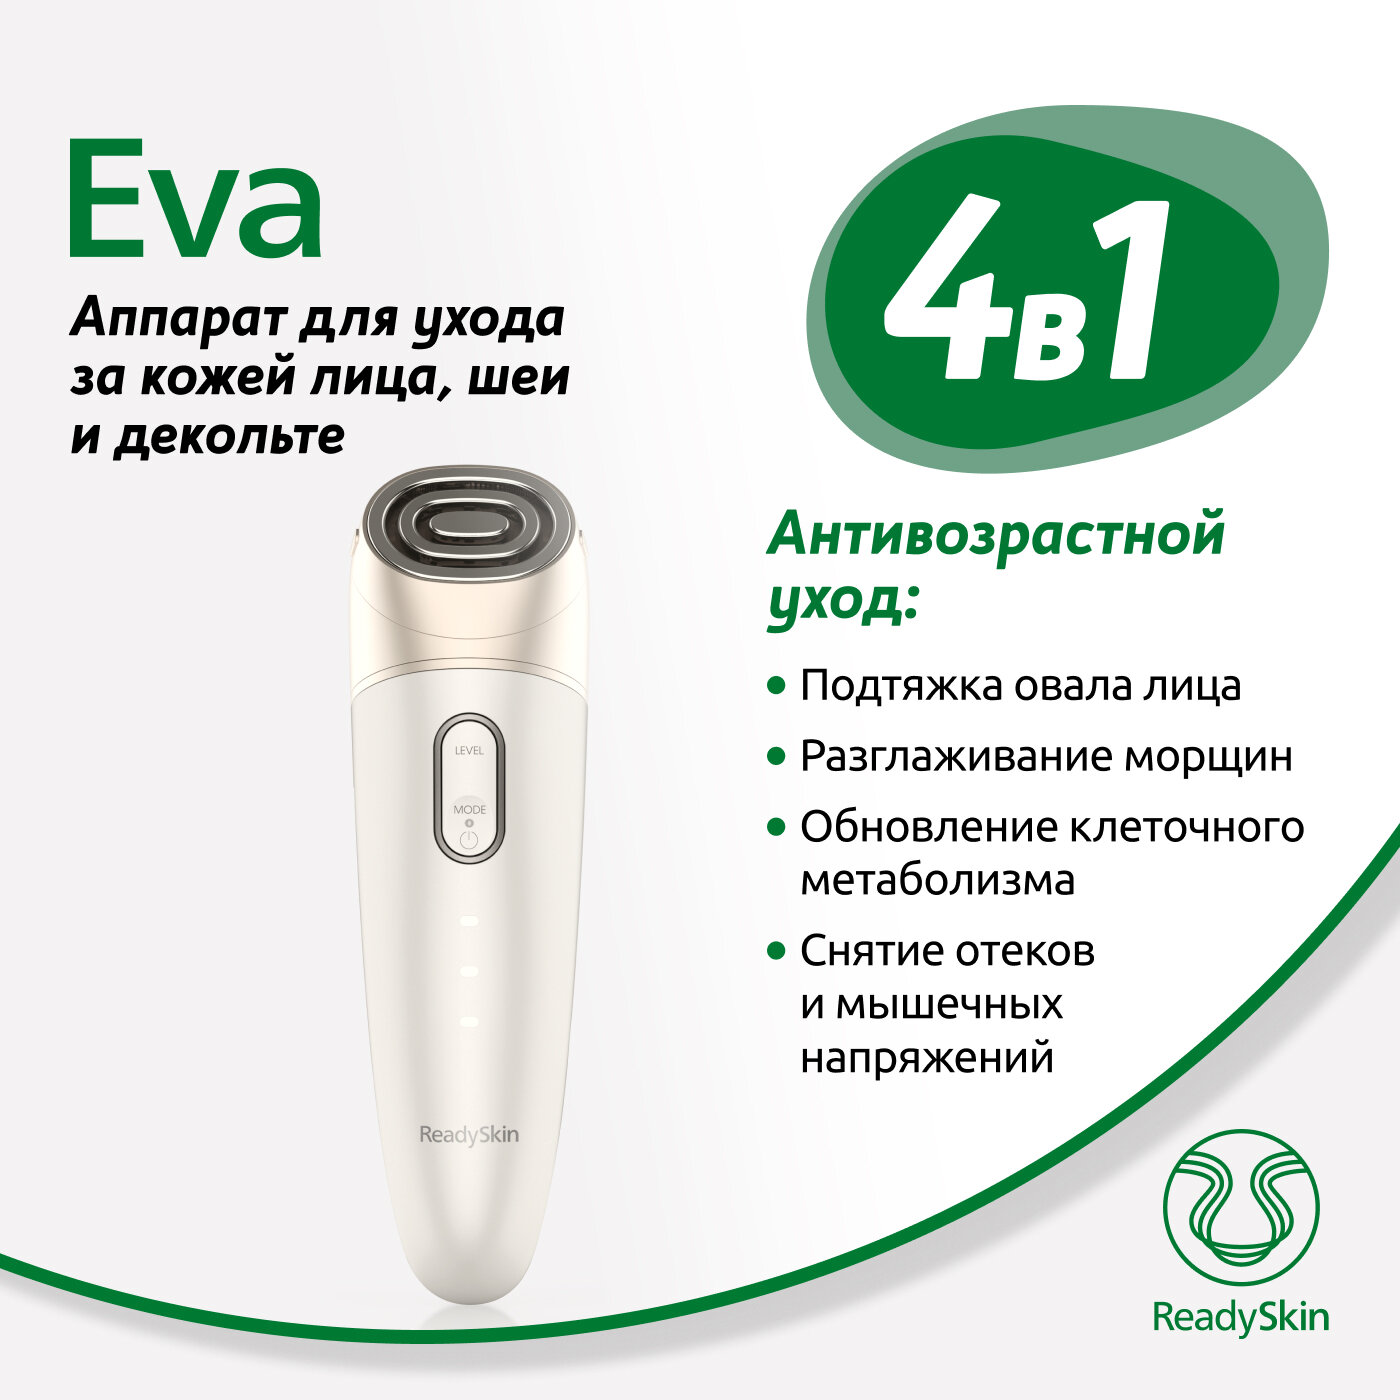 ReadySkin Eva Аппарат для омоложения, RF лифтинг, микротоки, LED хромотерапия, косметологический массажер для ухода за кожей лица, шеей и декольте - фотография № 2